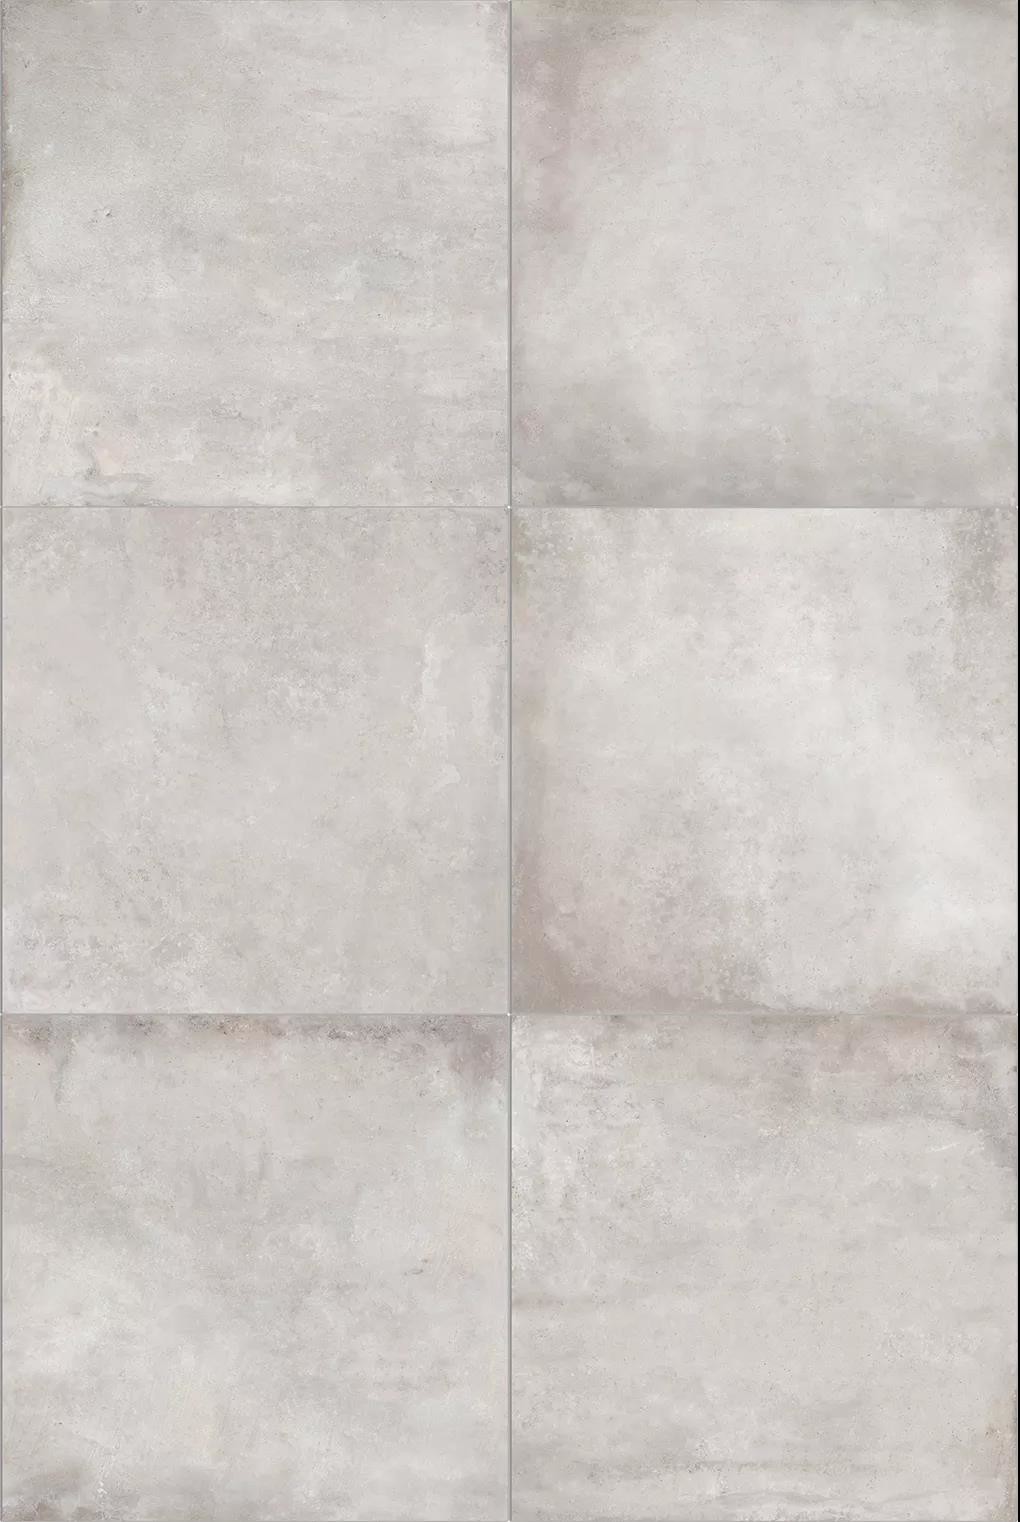 600*600/800*800MM rustic tiles  with matt surface,modern cement grey series